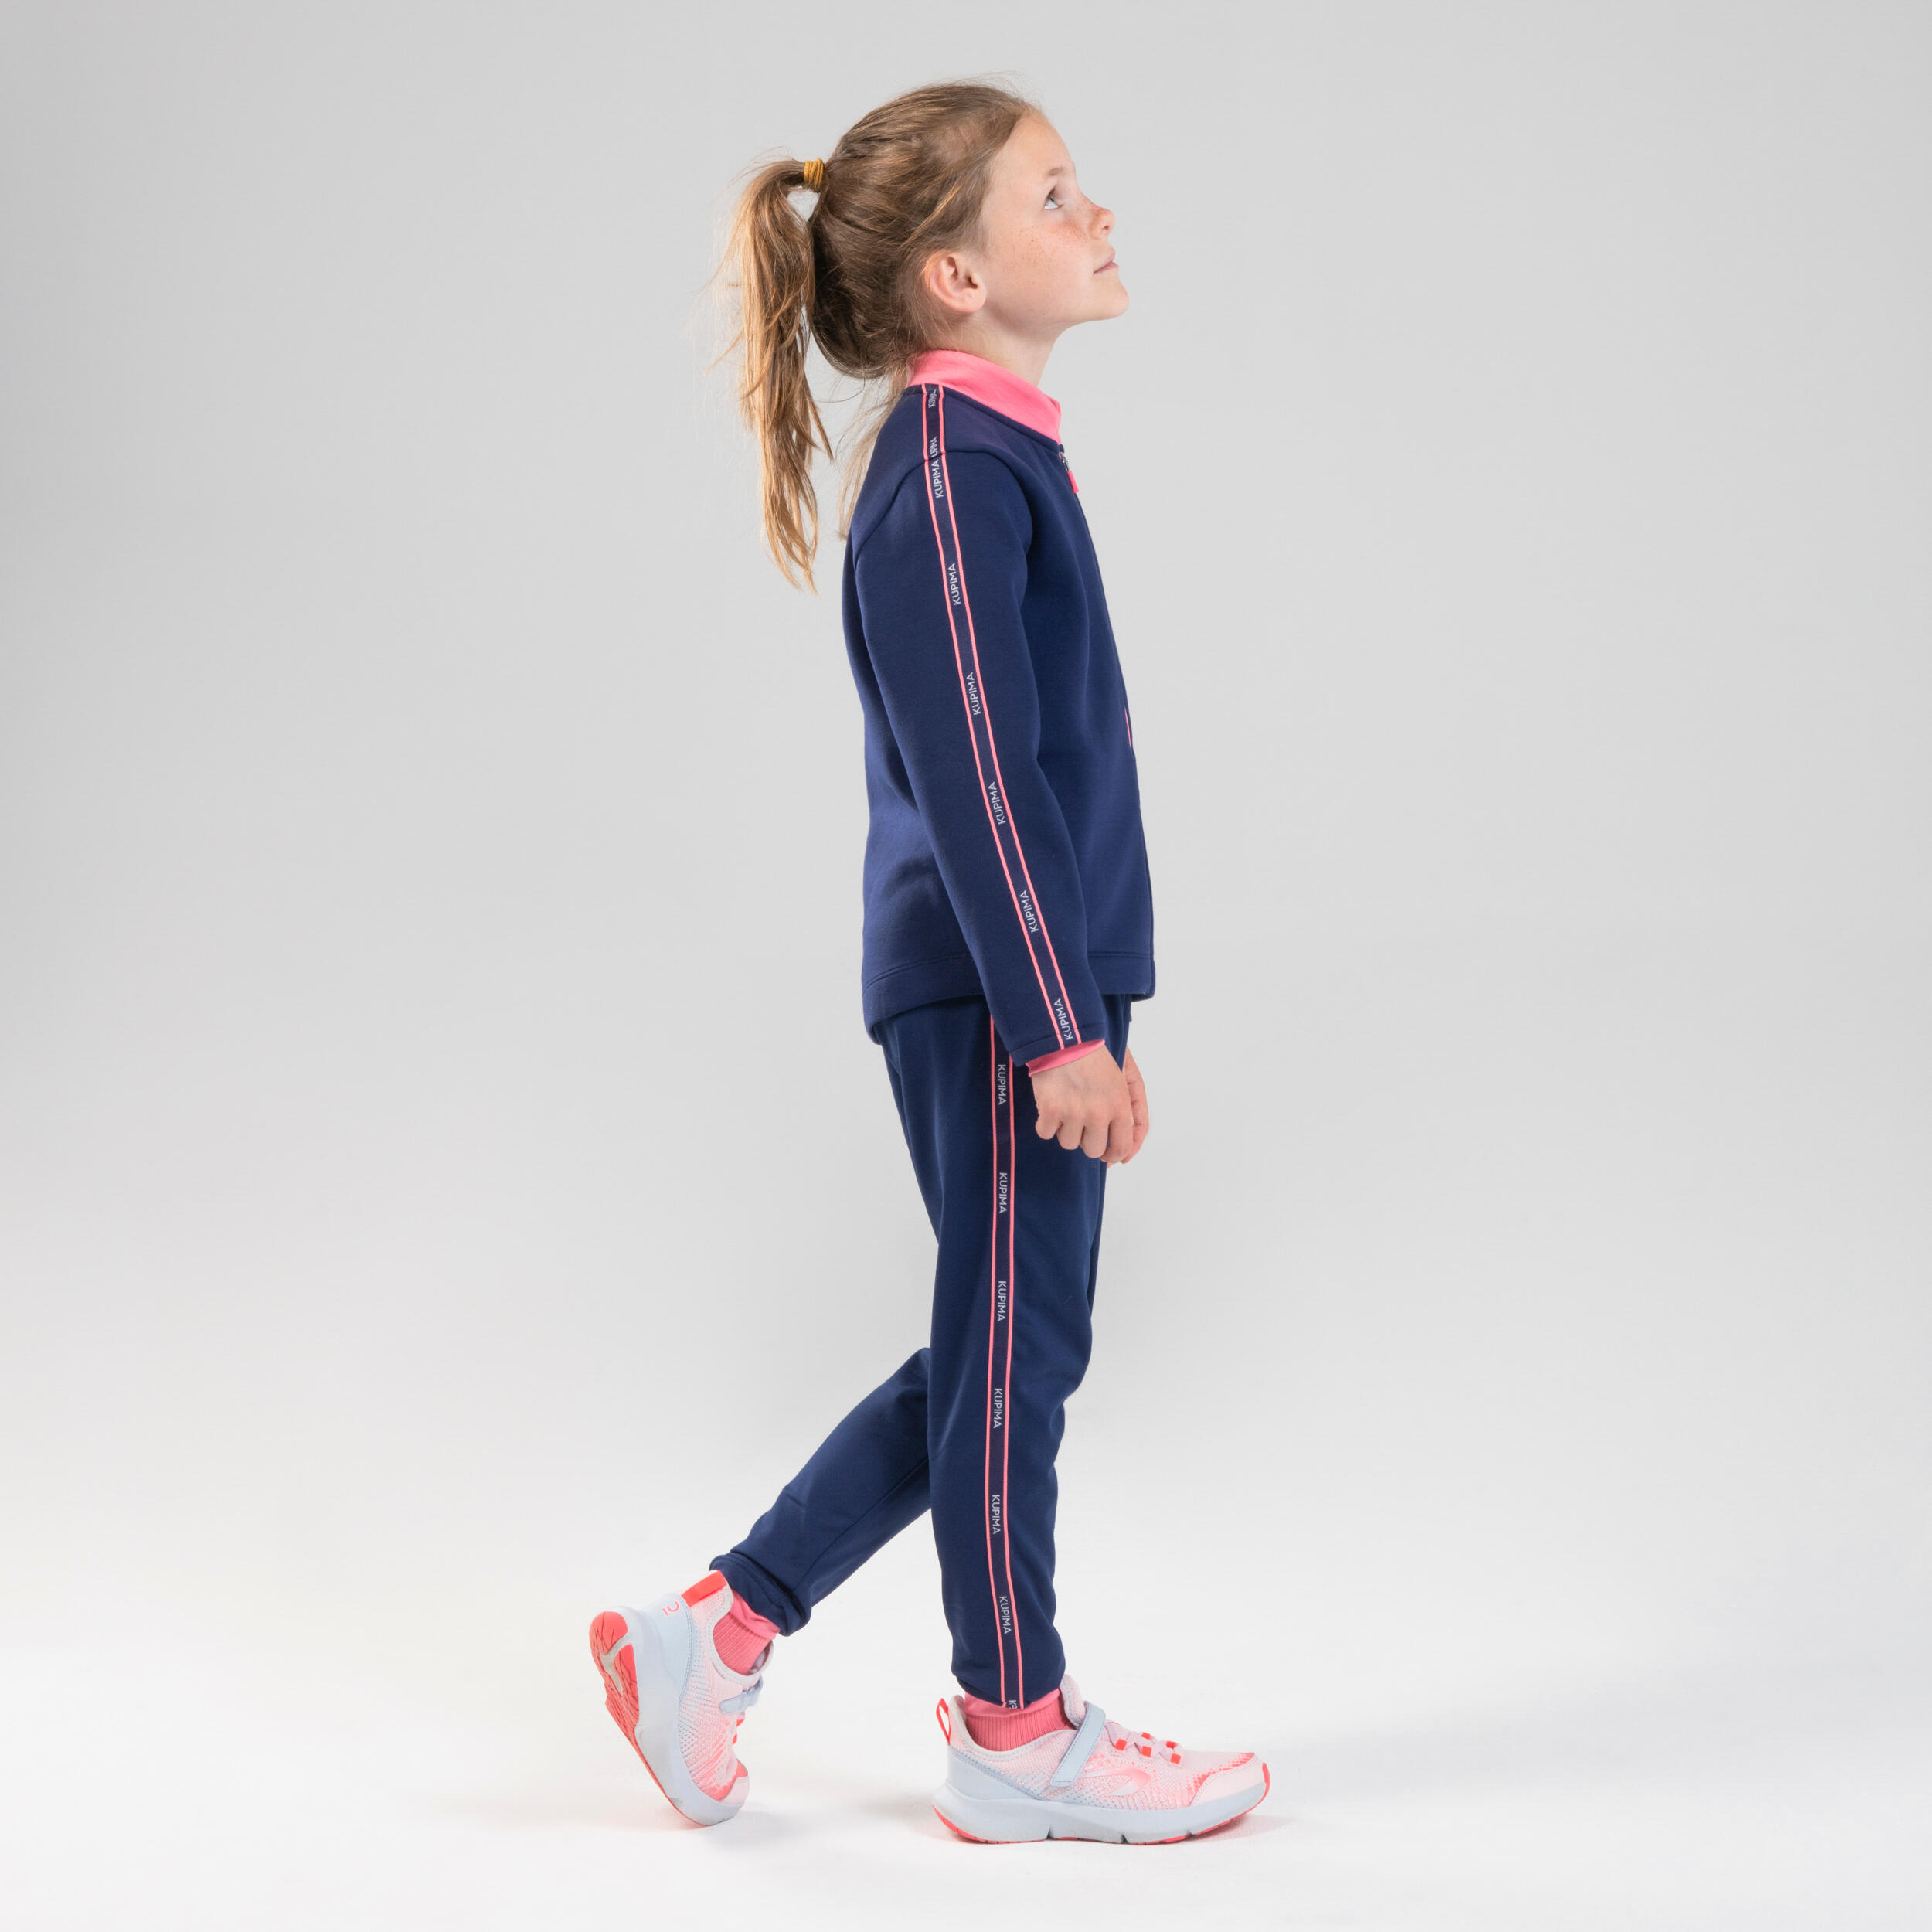 Pantalon de trening S500 educație fizică respirant albastru-roz fete decathlon.ro  Imbracaminte educatie fizica fete